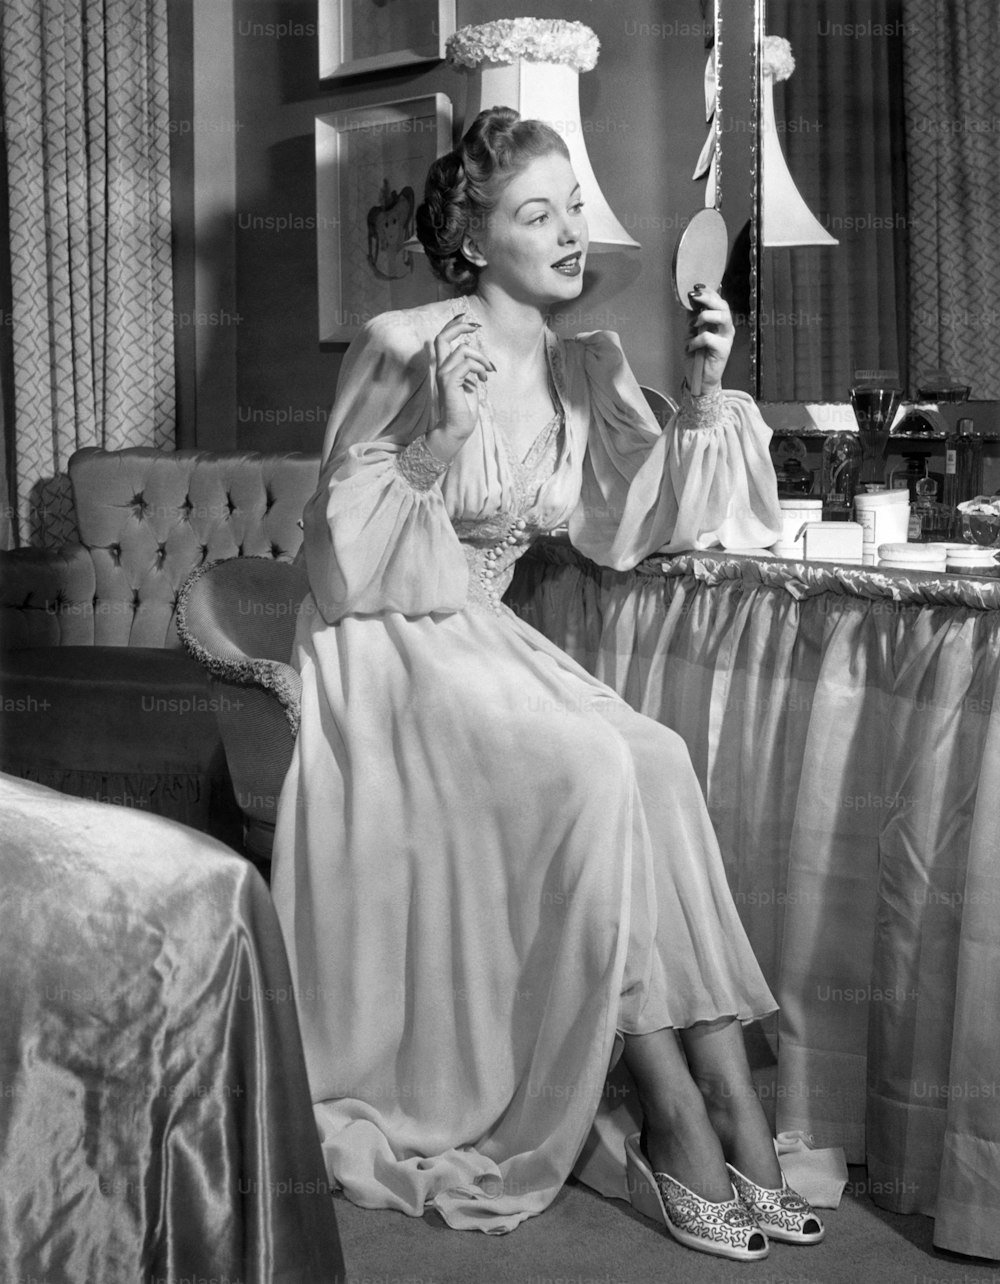 STATI UNITI - 1950 circa: Una donna in camicia da notte che si guarda allo specchio.